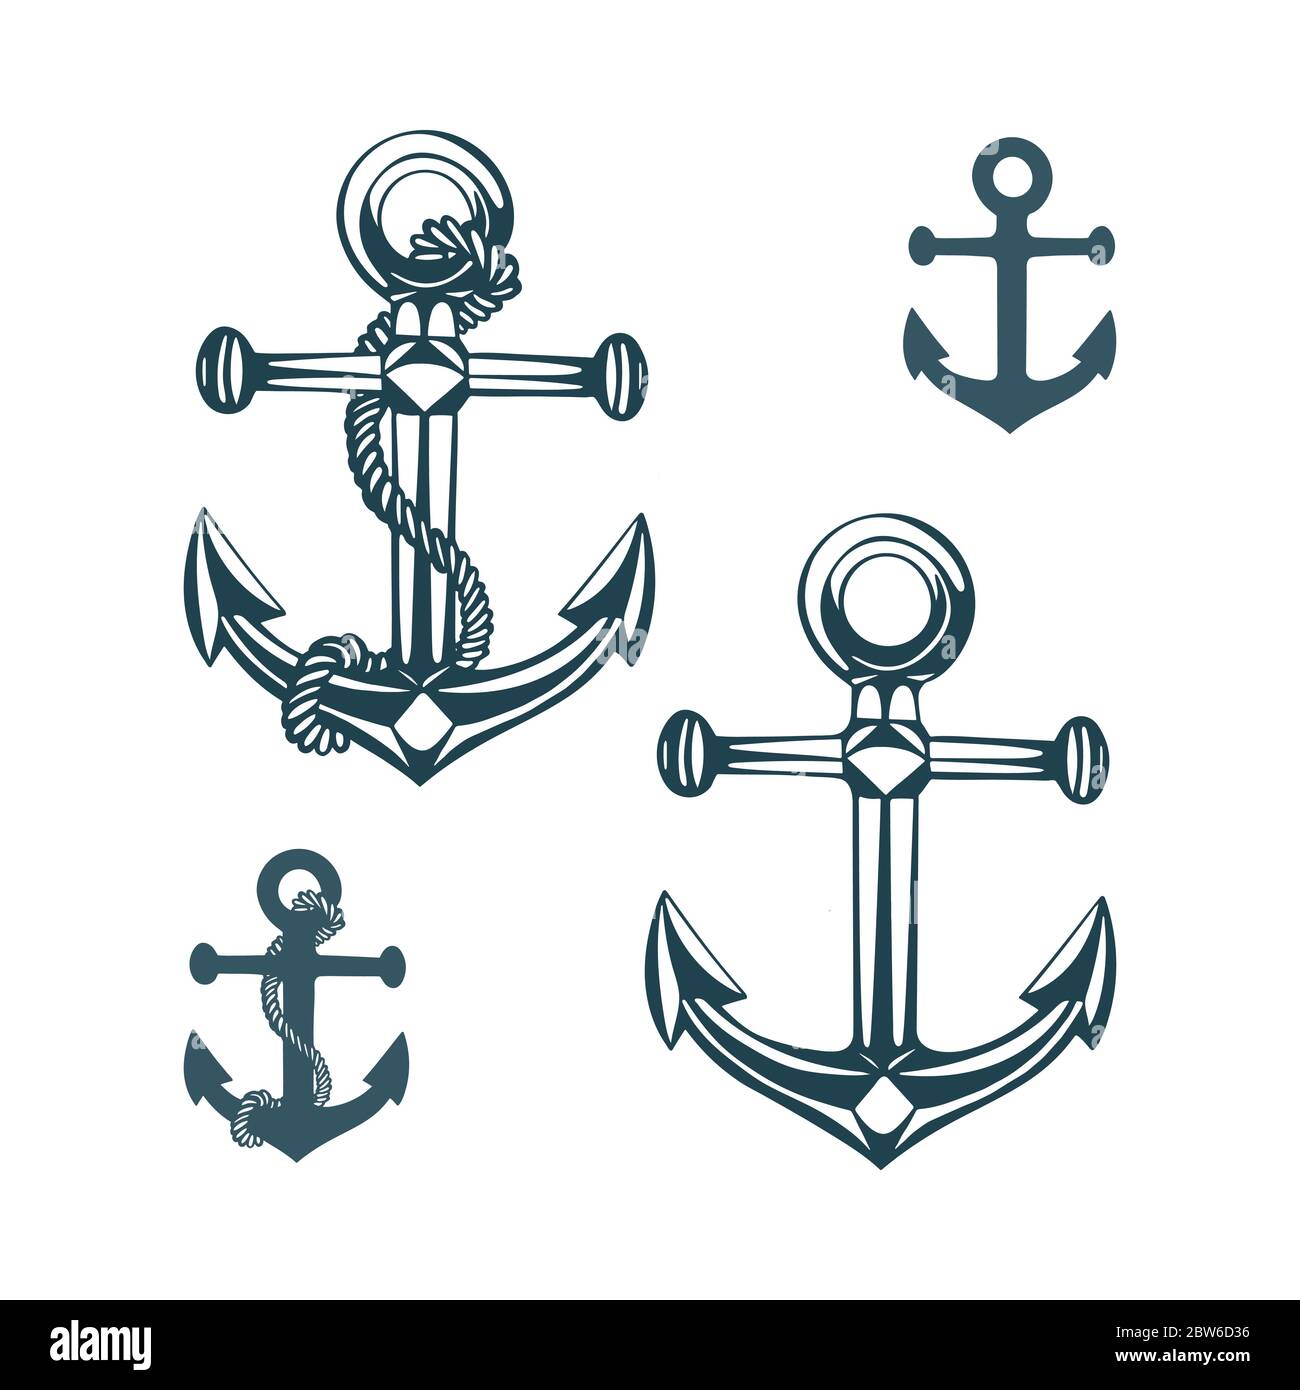 Boat anchor. Hand drawn boat anchors vector illustrations set